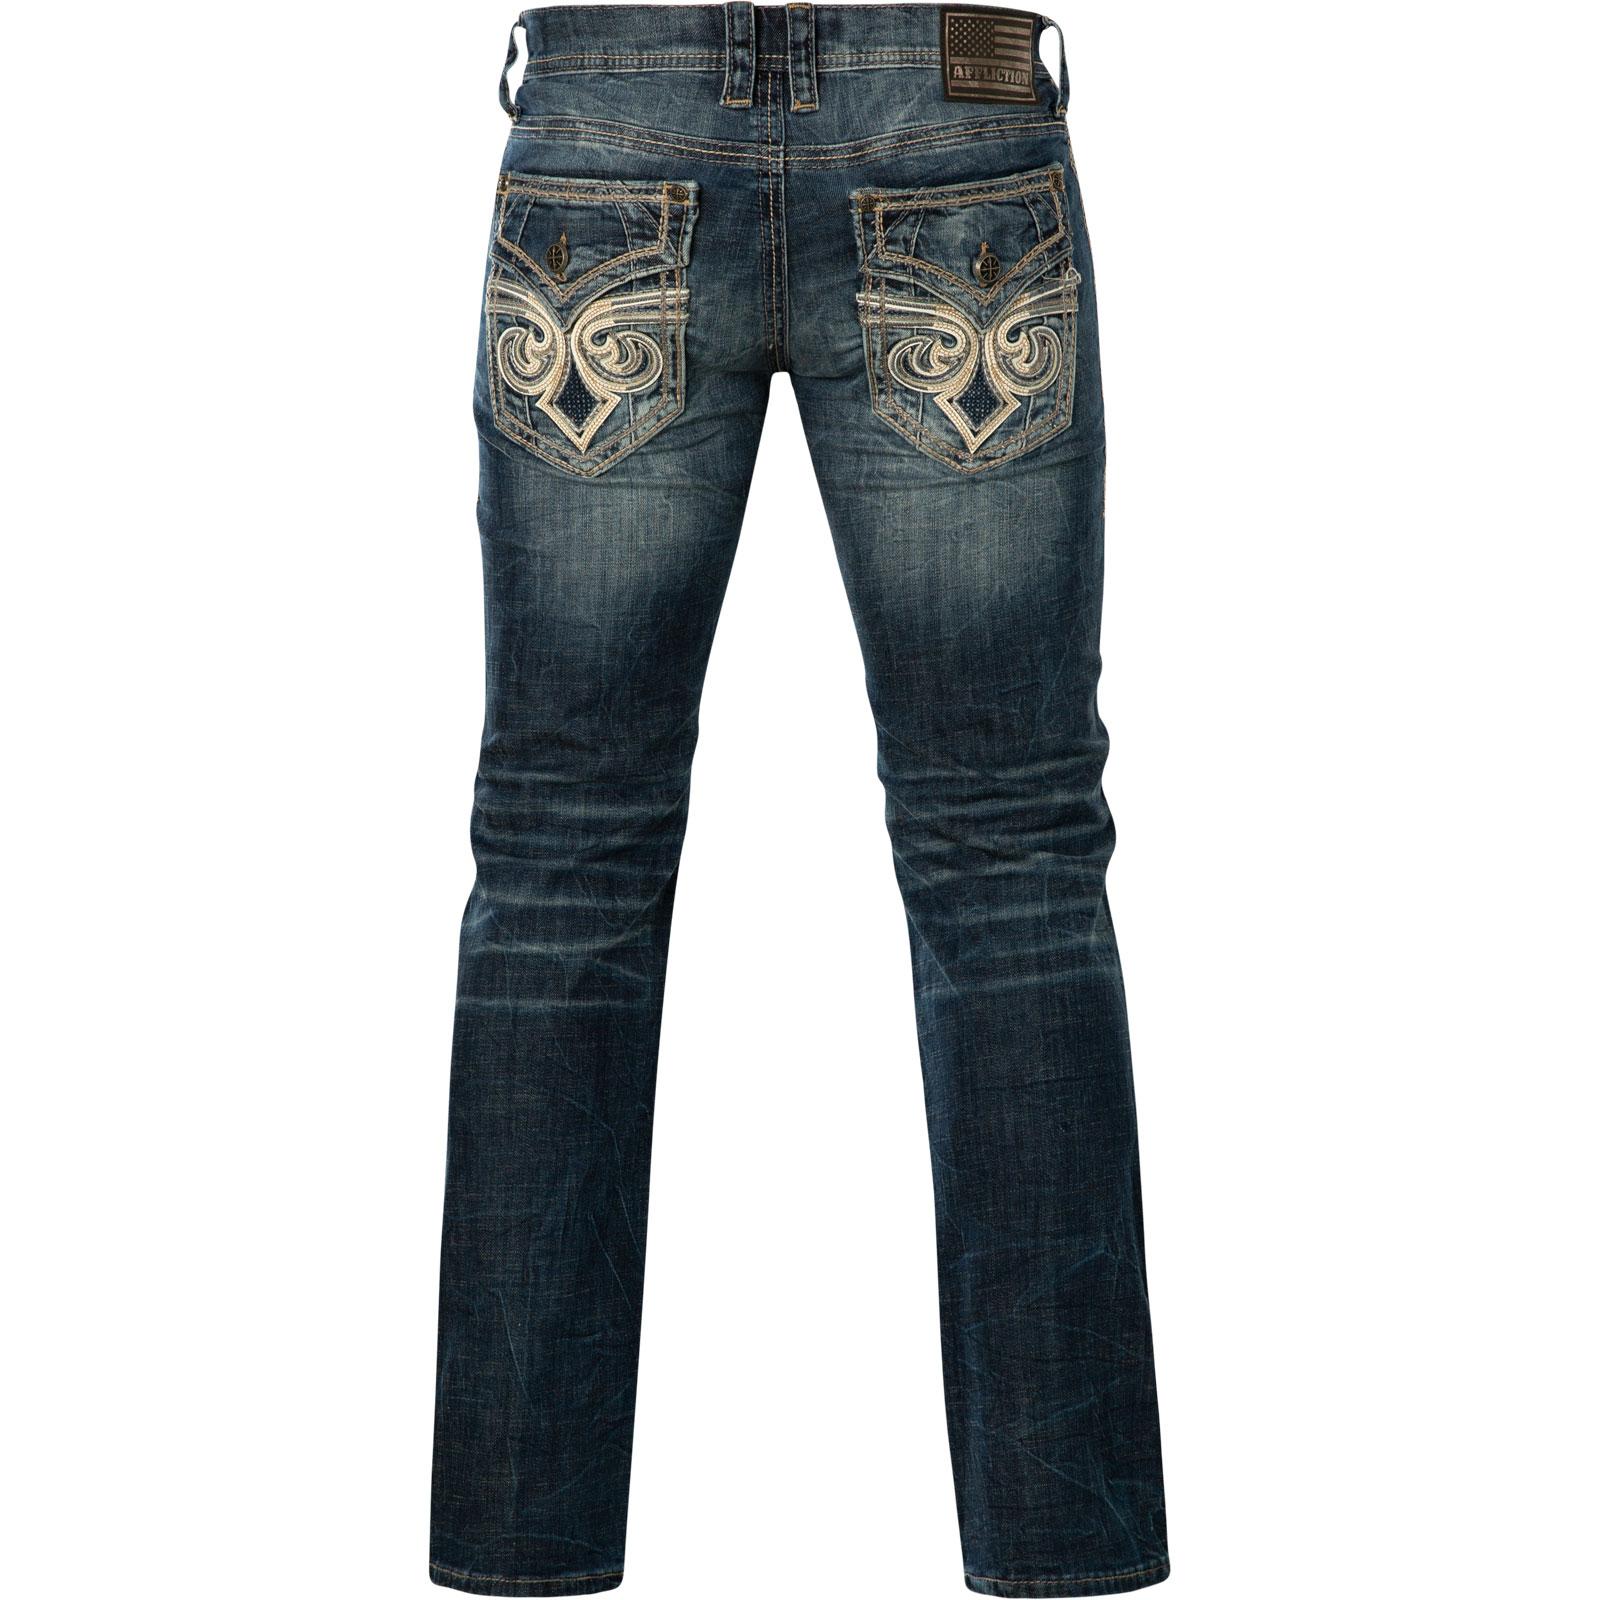 Affliction Jeans Ace Fleur Oasi with decorative faux leather details